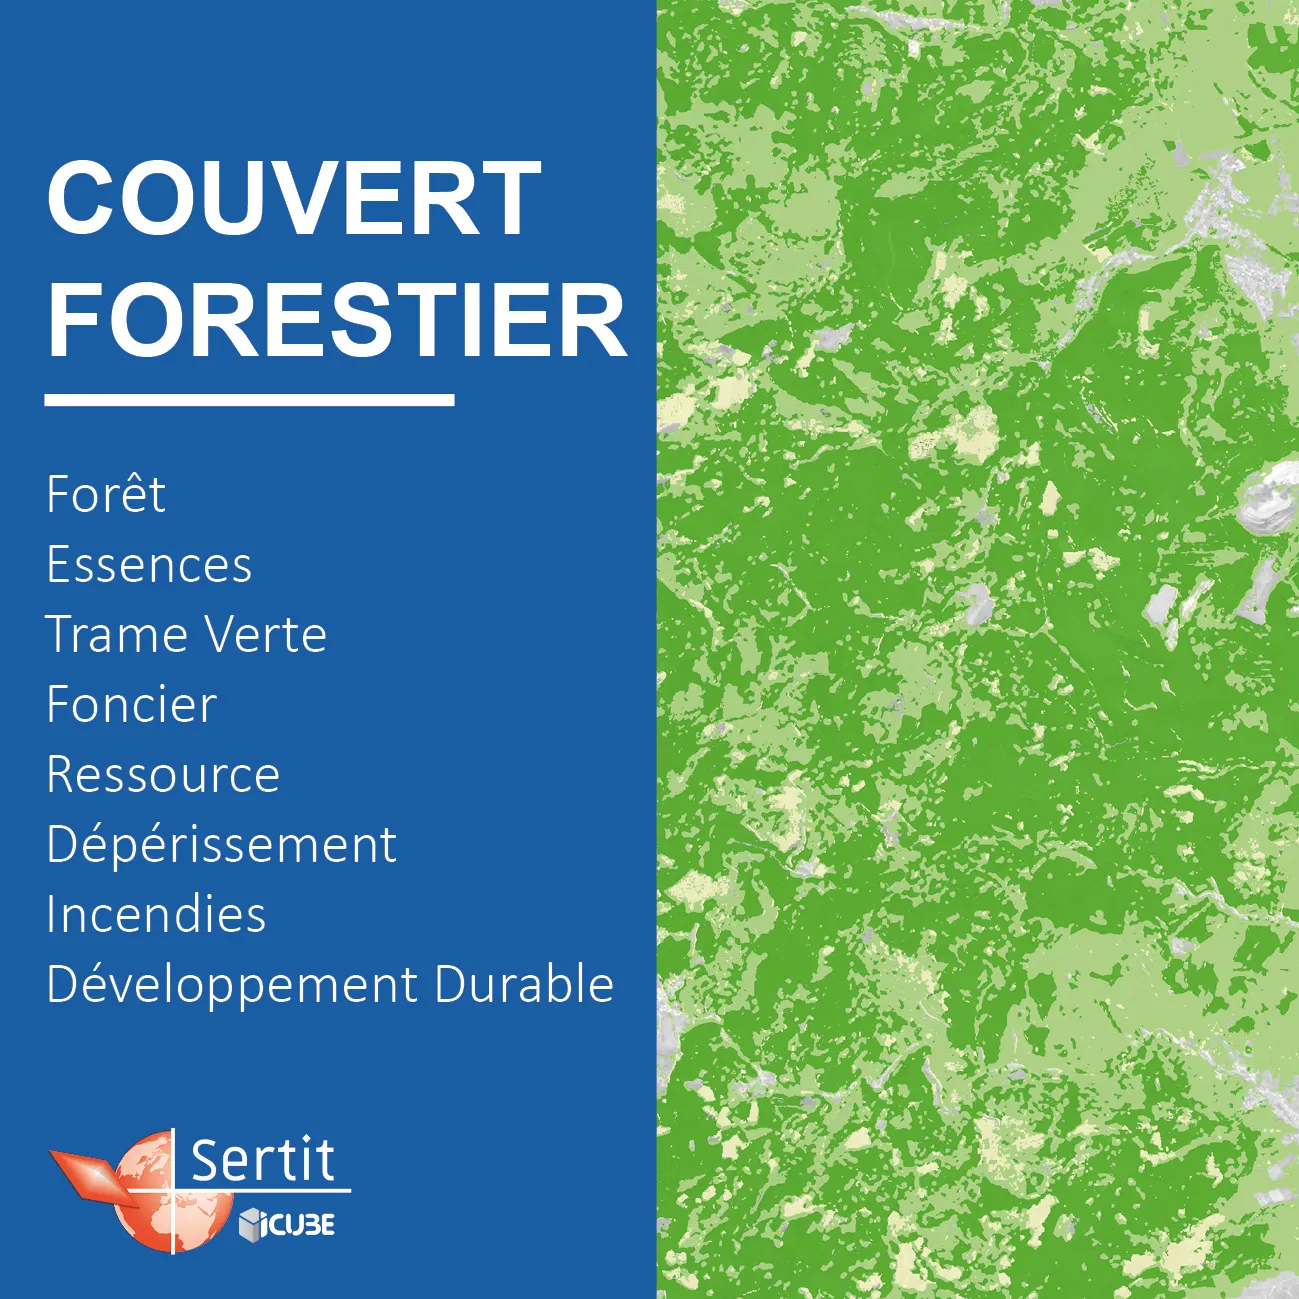 Couvert forestier: Forêt, Essences, Trame Verte, Foncier, Ressource, Dépérissement, Incendies, Développement Durable